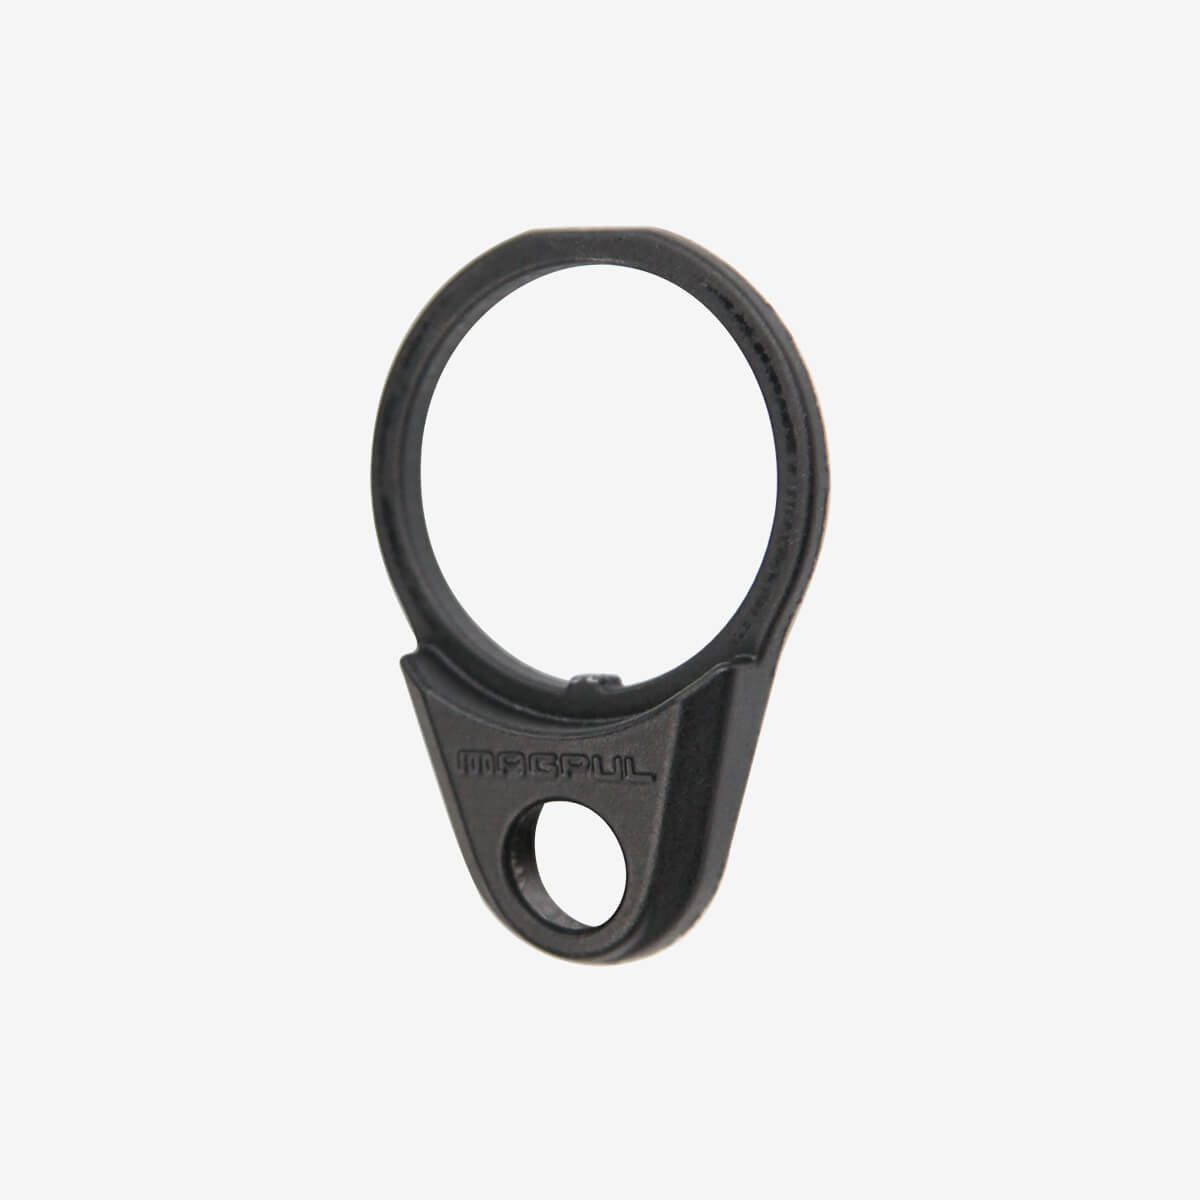 ASAP®-lower receiver QD sling ring seat